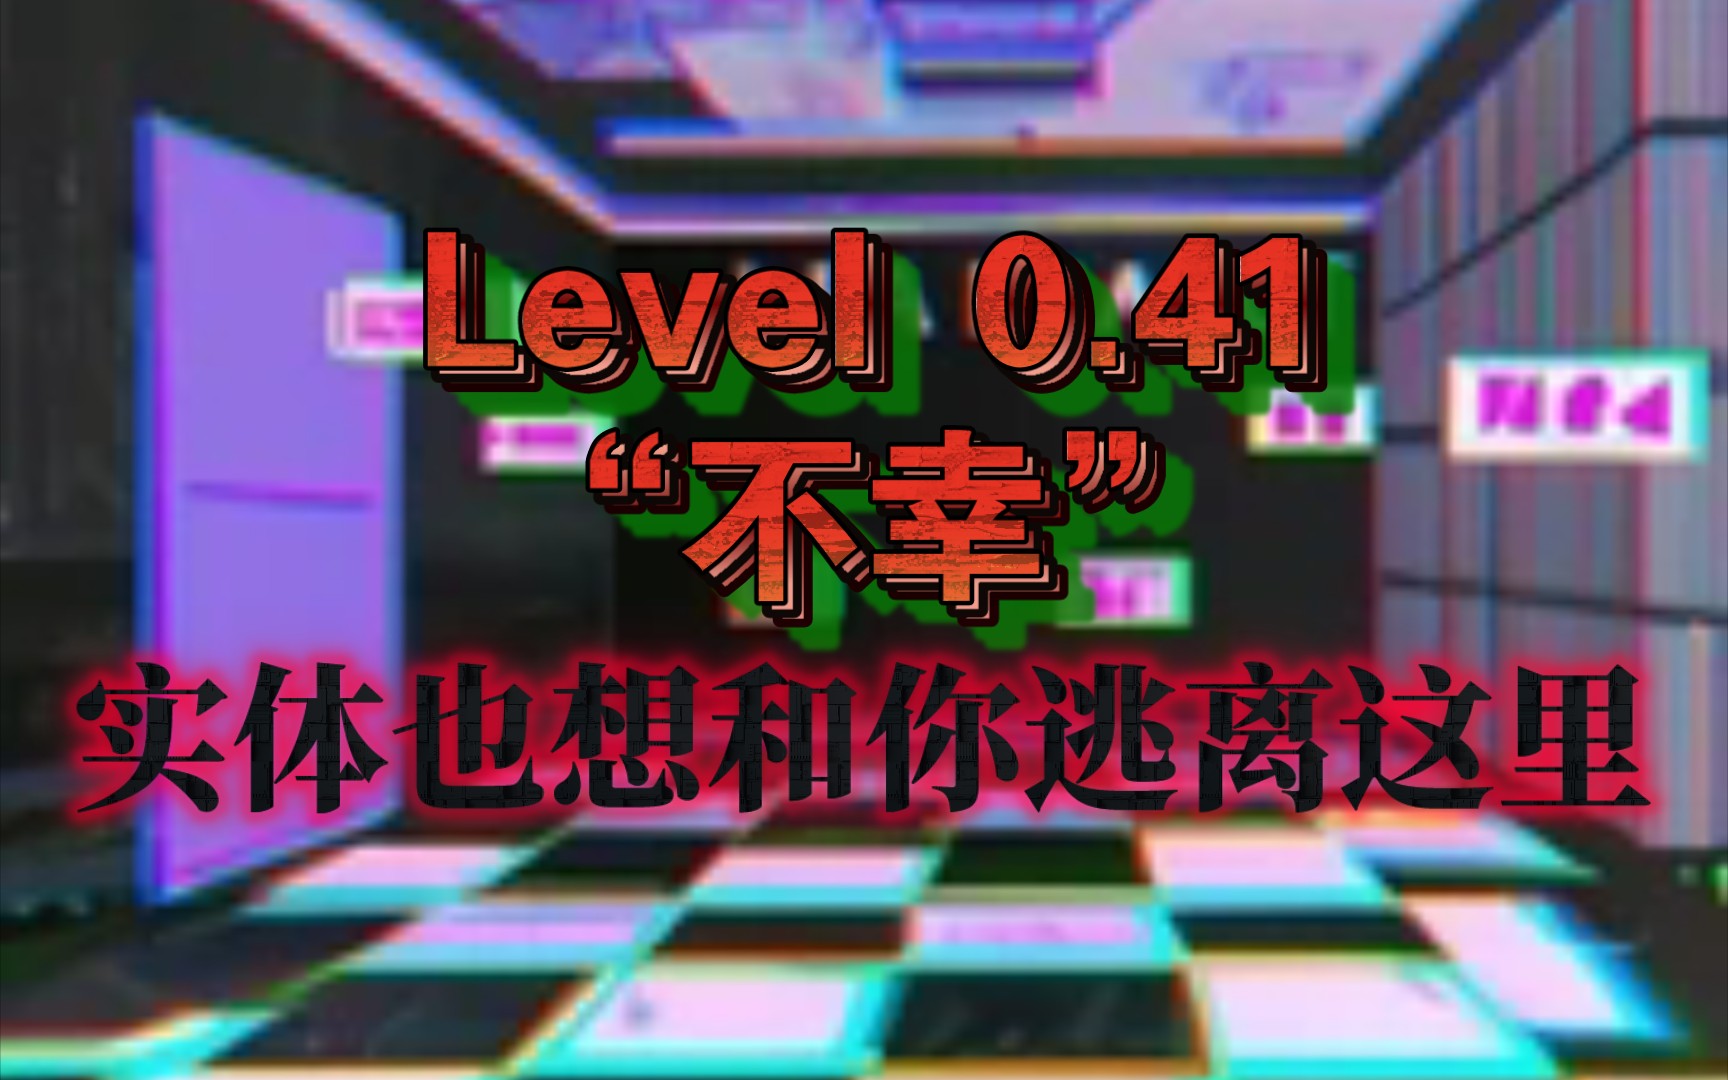 Level 0.41“不幸”!这是一个不幸的楼层，永远都是!